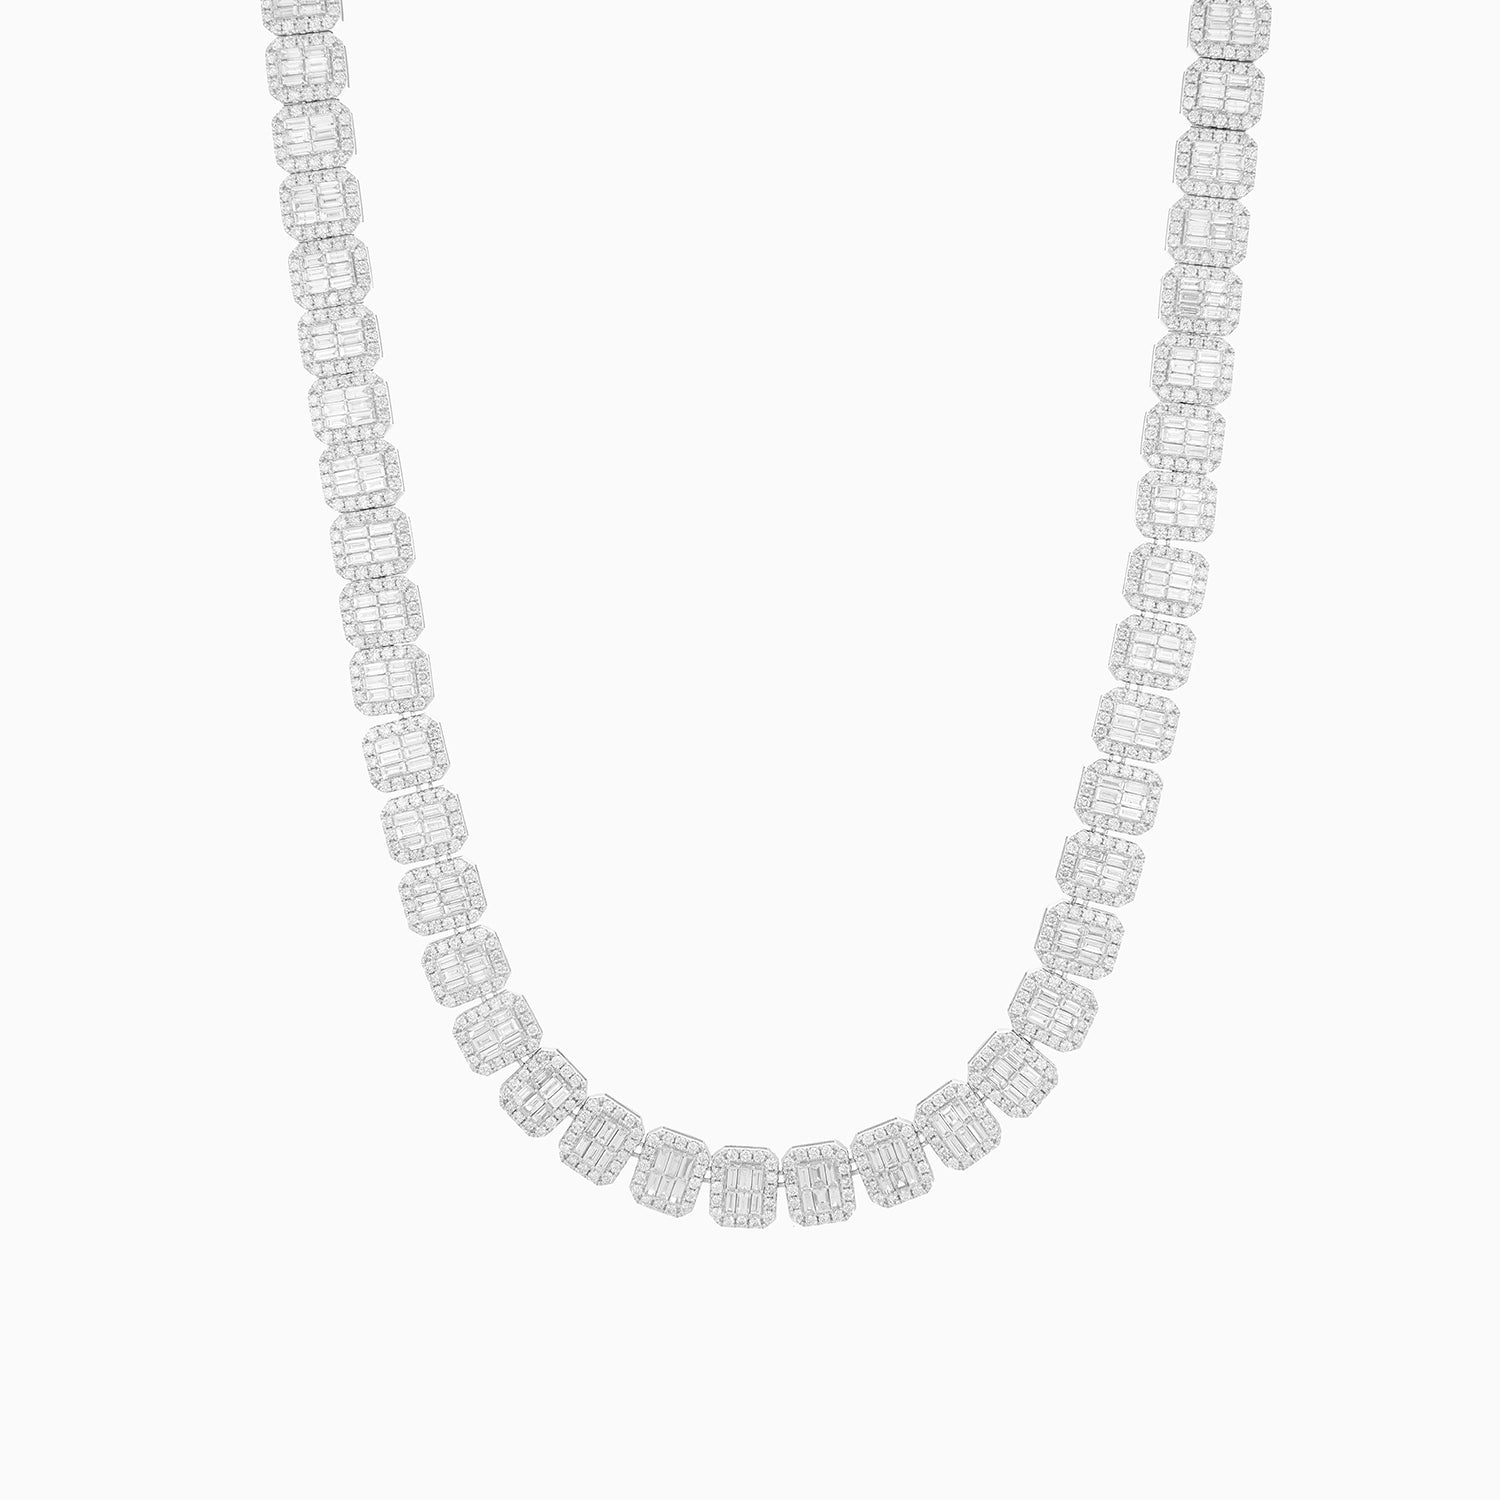 Asia Hola juguete Cadena Oro Blanco 14k Eslabones Tipo Esmeralda con Diamantes